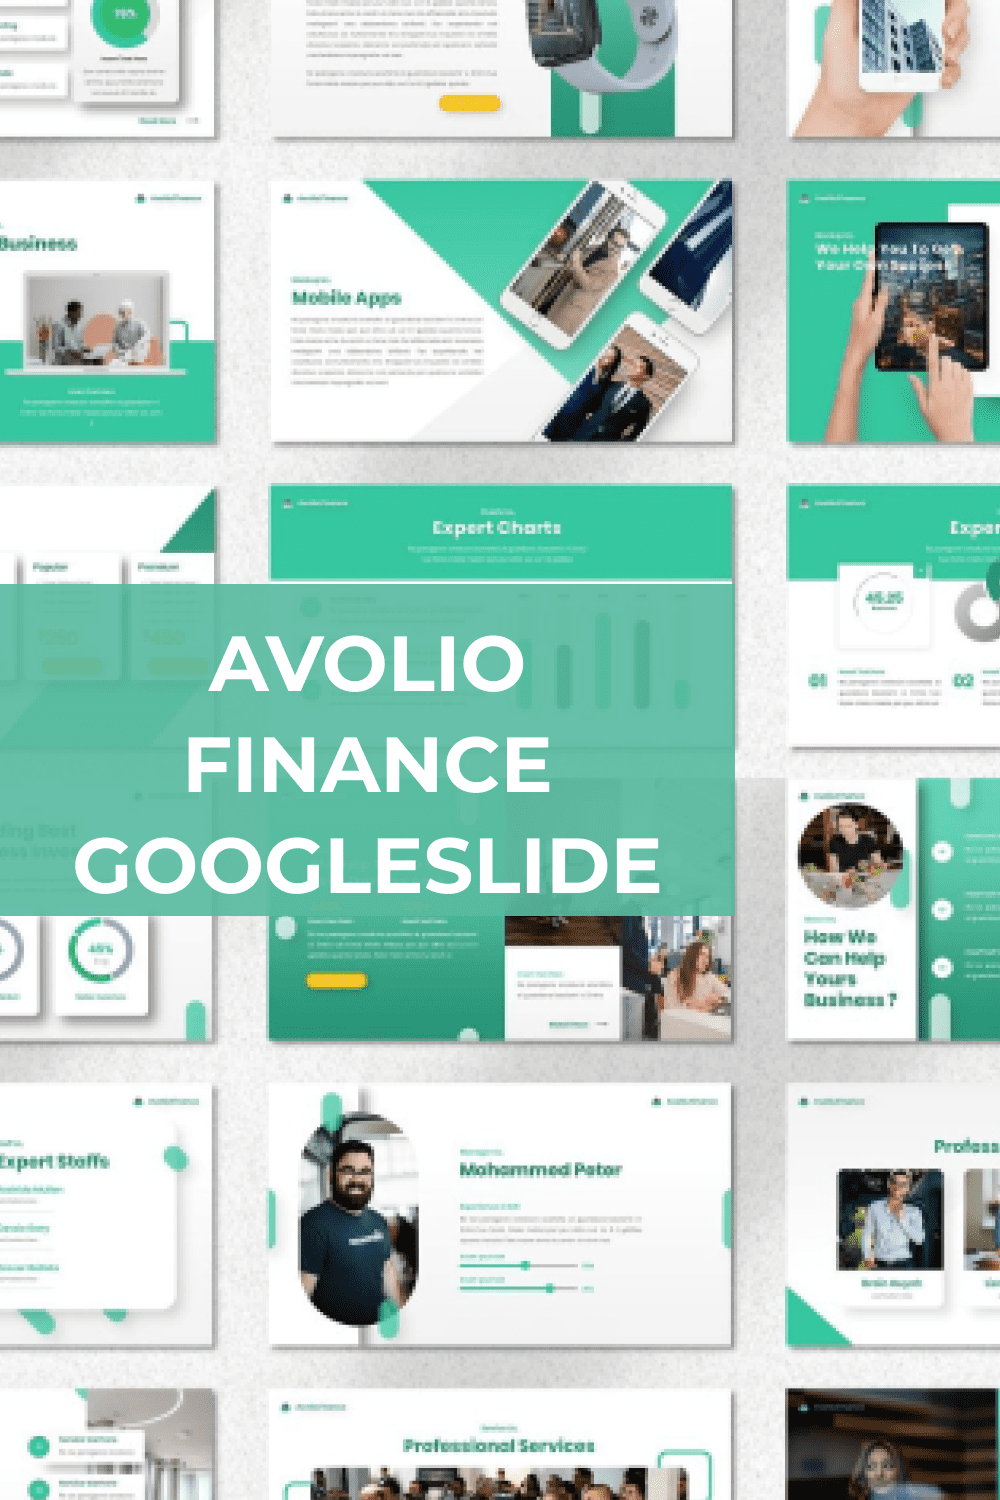 Avolio - Finance Googleslide Pinterest.